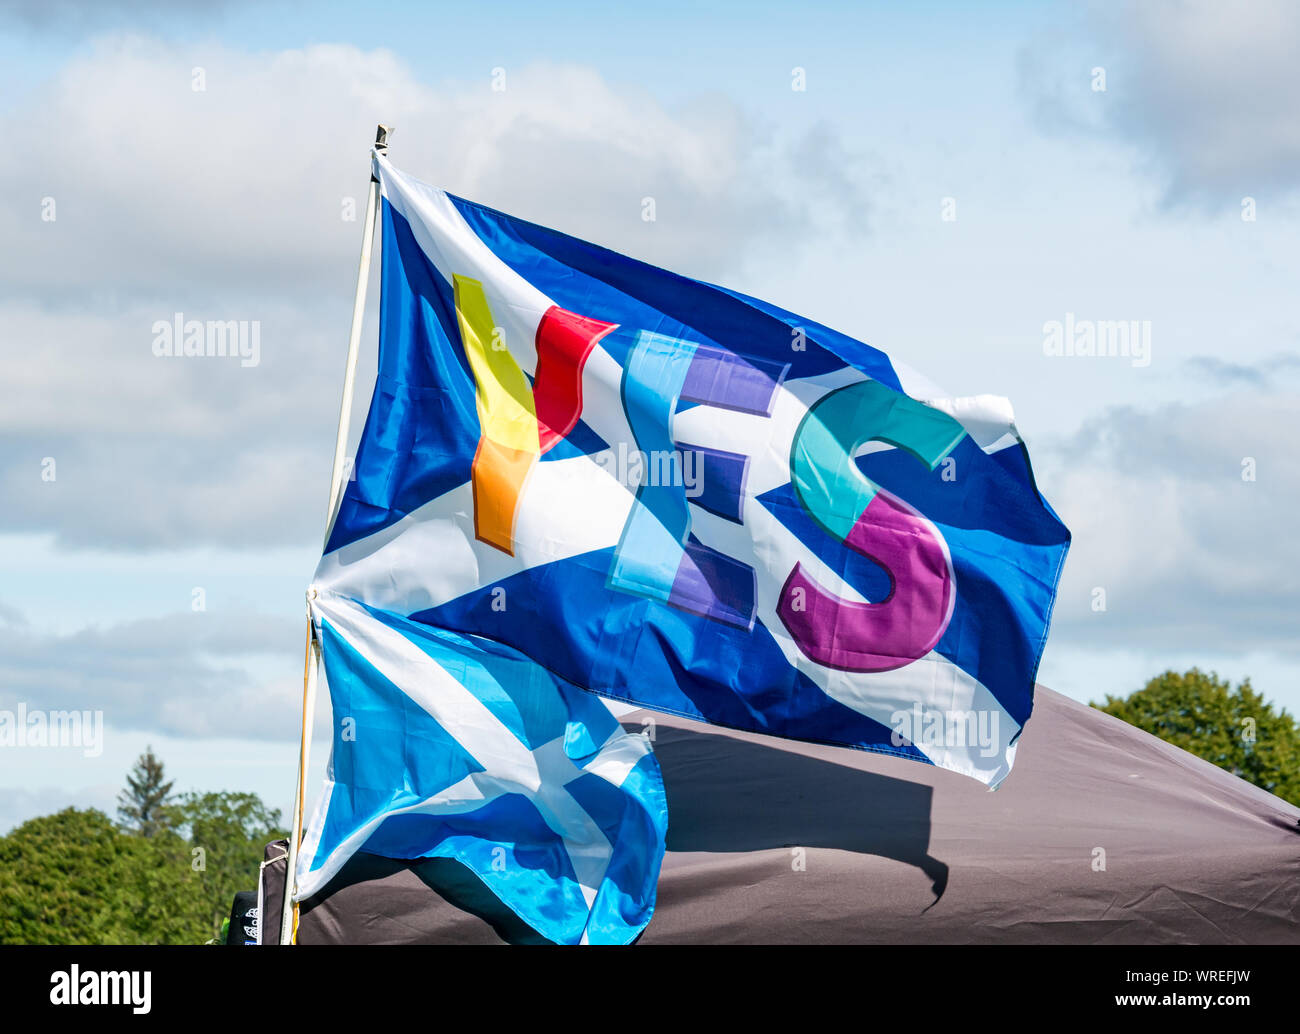 Tous sous une même bannière (Indépendance) Rallye AUOB, Perth, Ecosse, Royaume-Uni. Un drapeau coloré Oui sautoir Banque D'Images